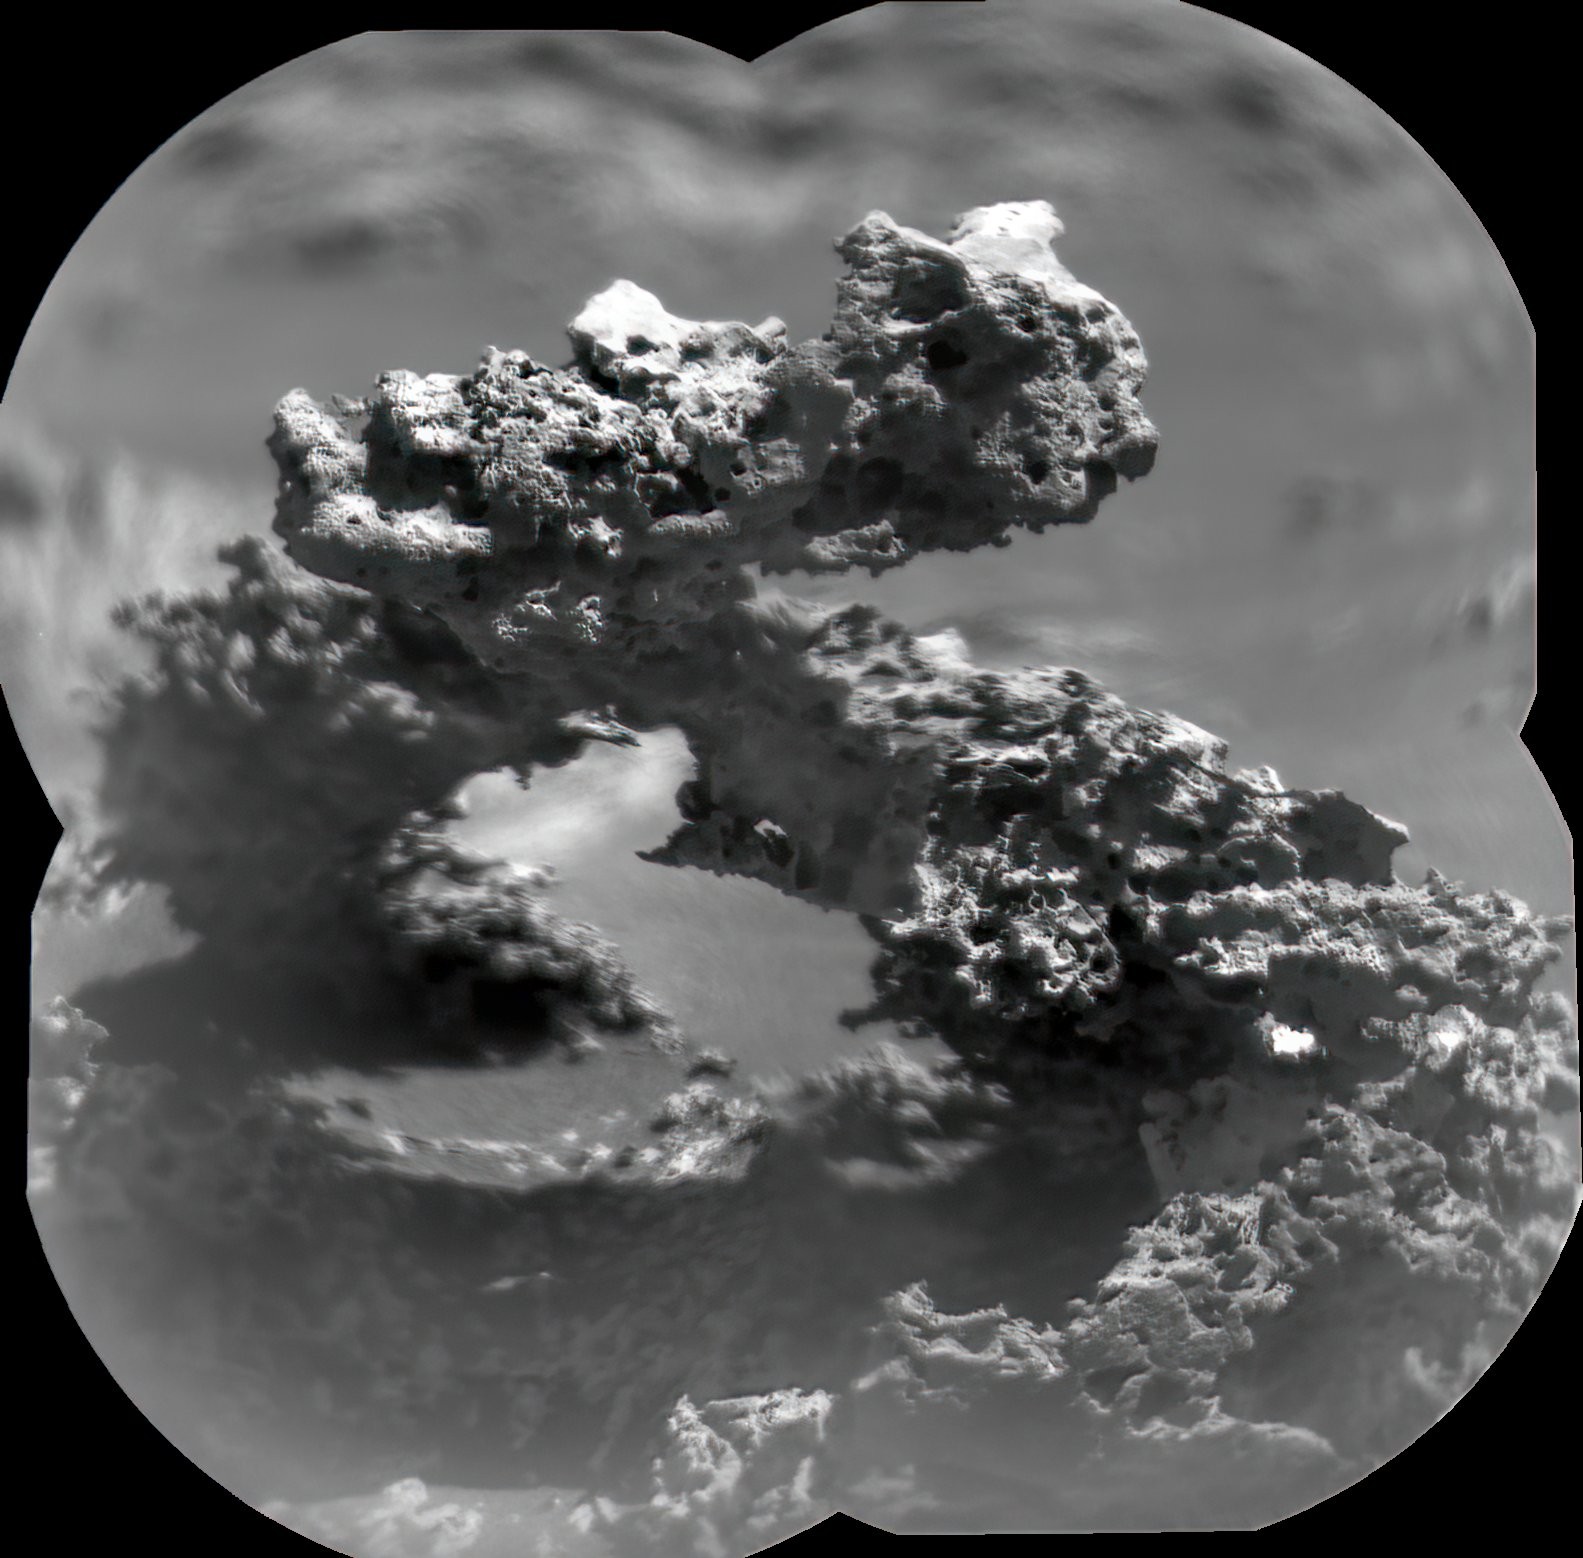 큐리오시티 분광 화학 카메라 쳄캠(Chemcam)으로 촬영한 암석 사진. 시민 과학자 케빈 길이 사진 여러 장을 모아 1장의 사진으로 편집했다. 사진=트위터/@kevinmgill